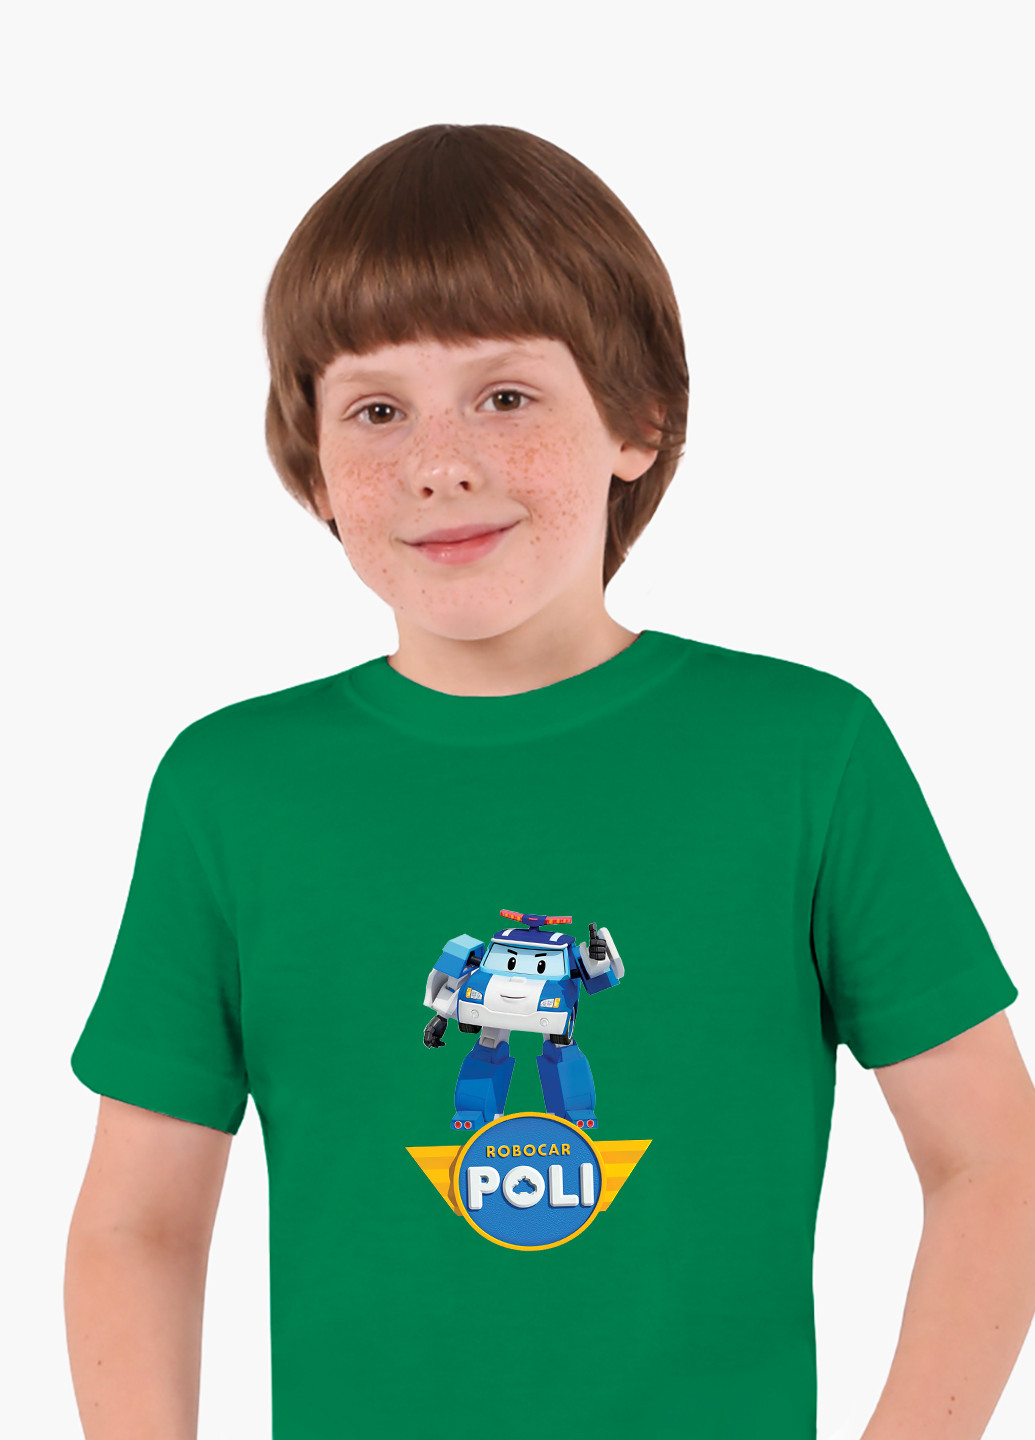 Зеленая демисезонная футболка детская робокар поли (robocar poli)(9224-1620) MobiPrint